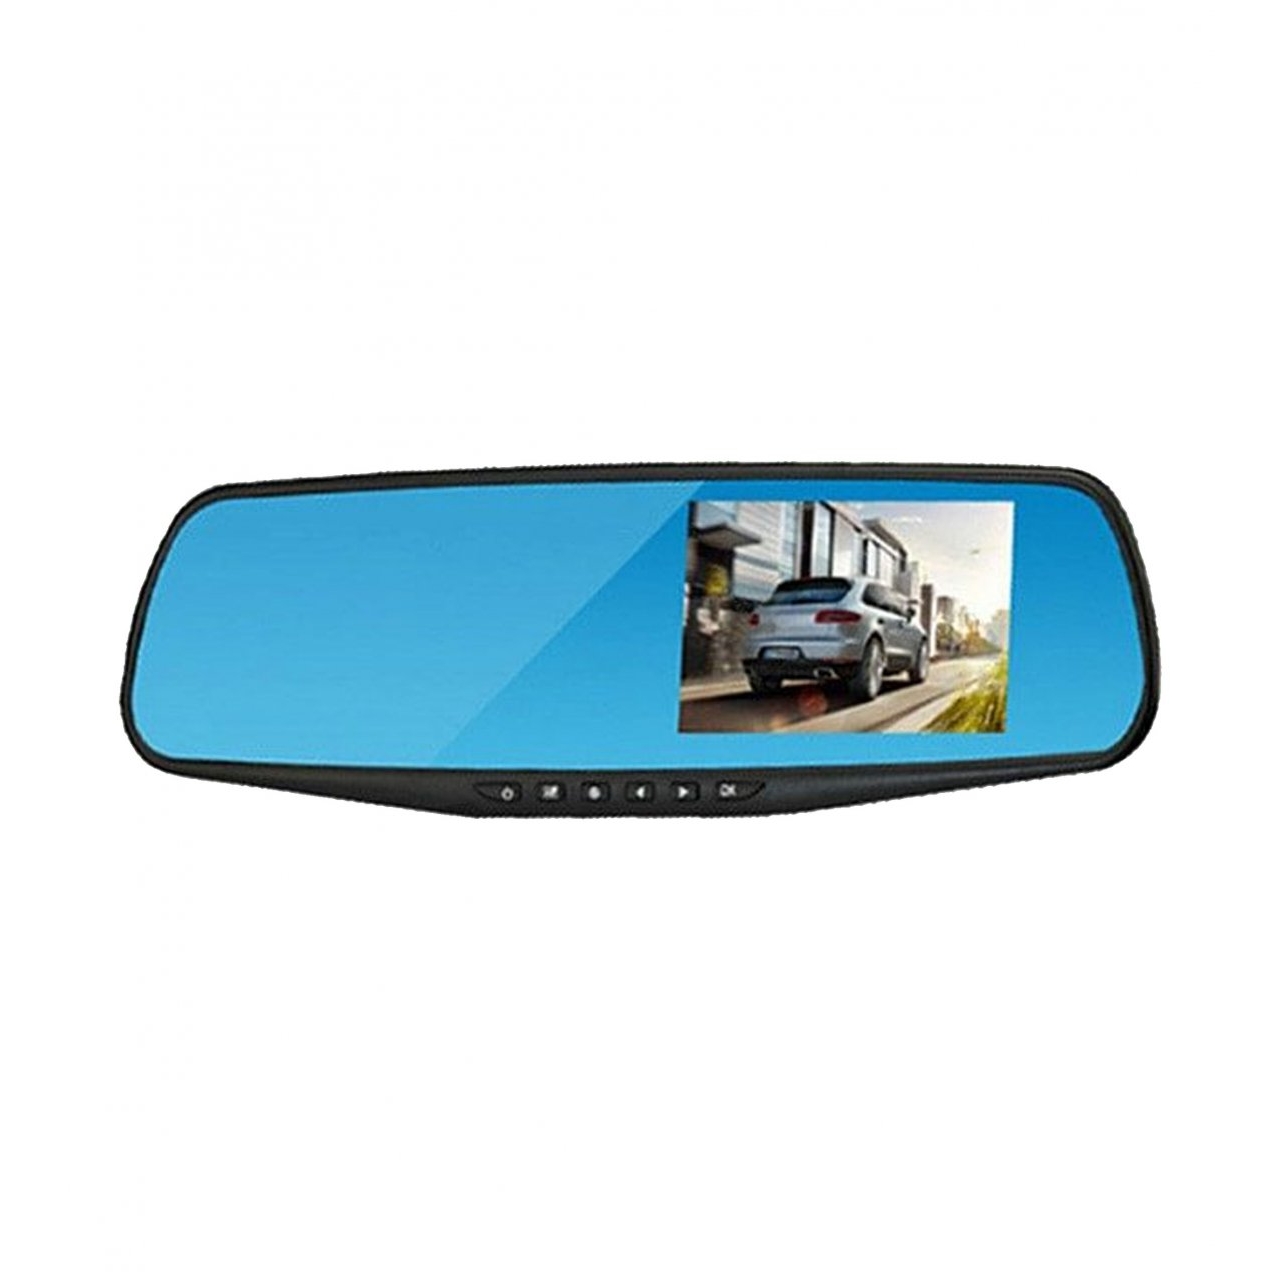 آینه مانیتور دار با دوربین جلو و دنده عقب خودرو برند رویال مدل DVR